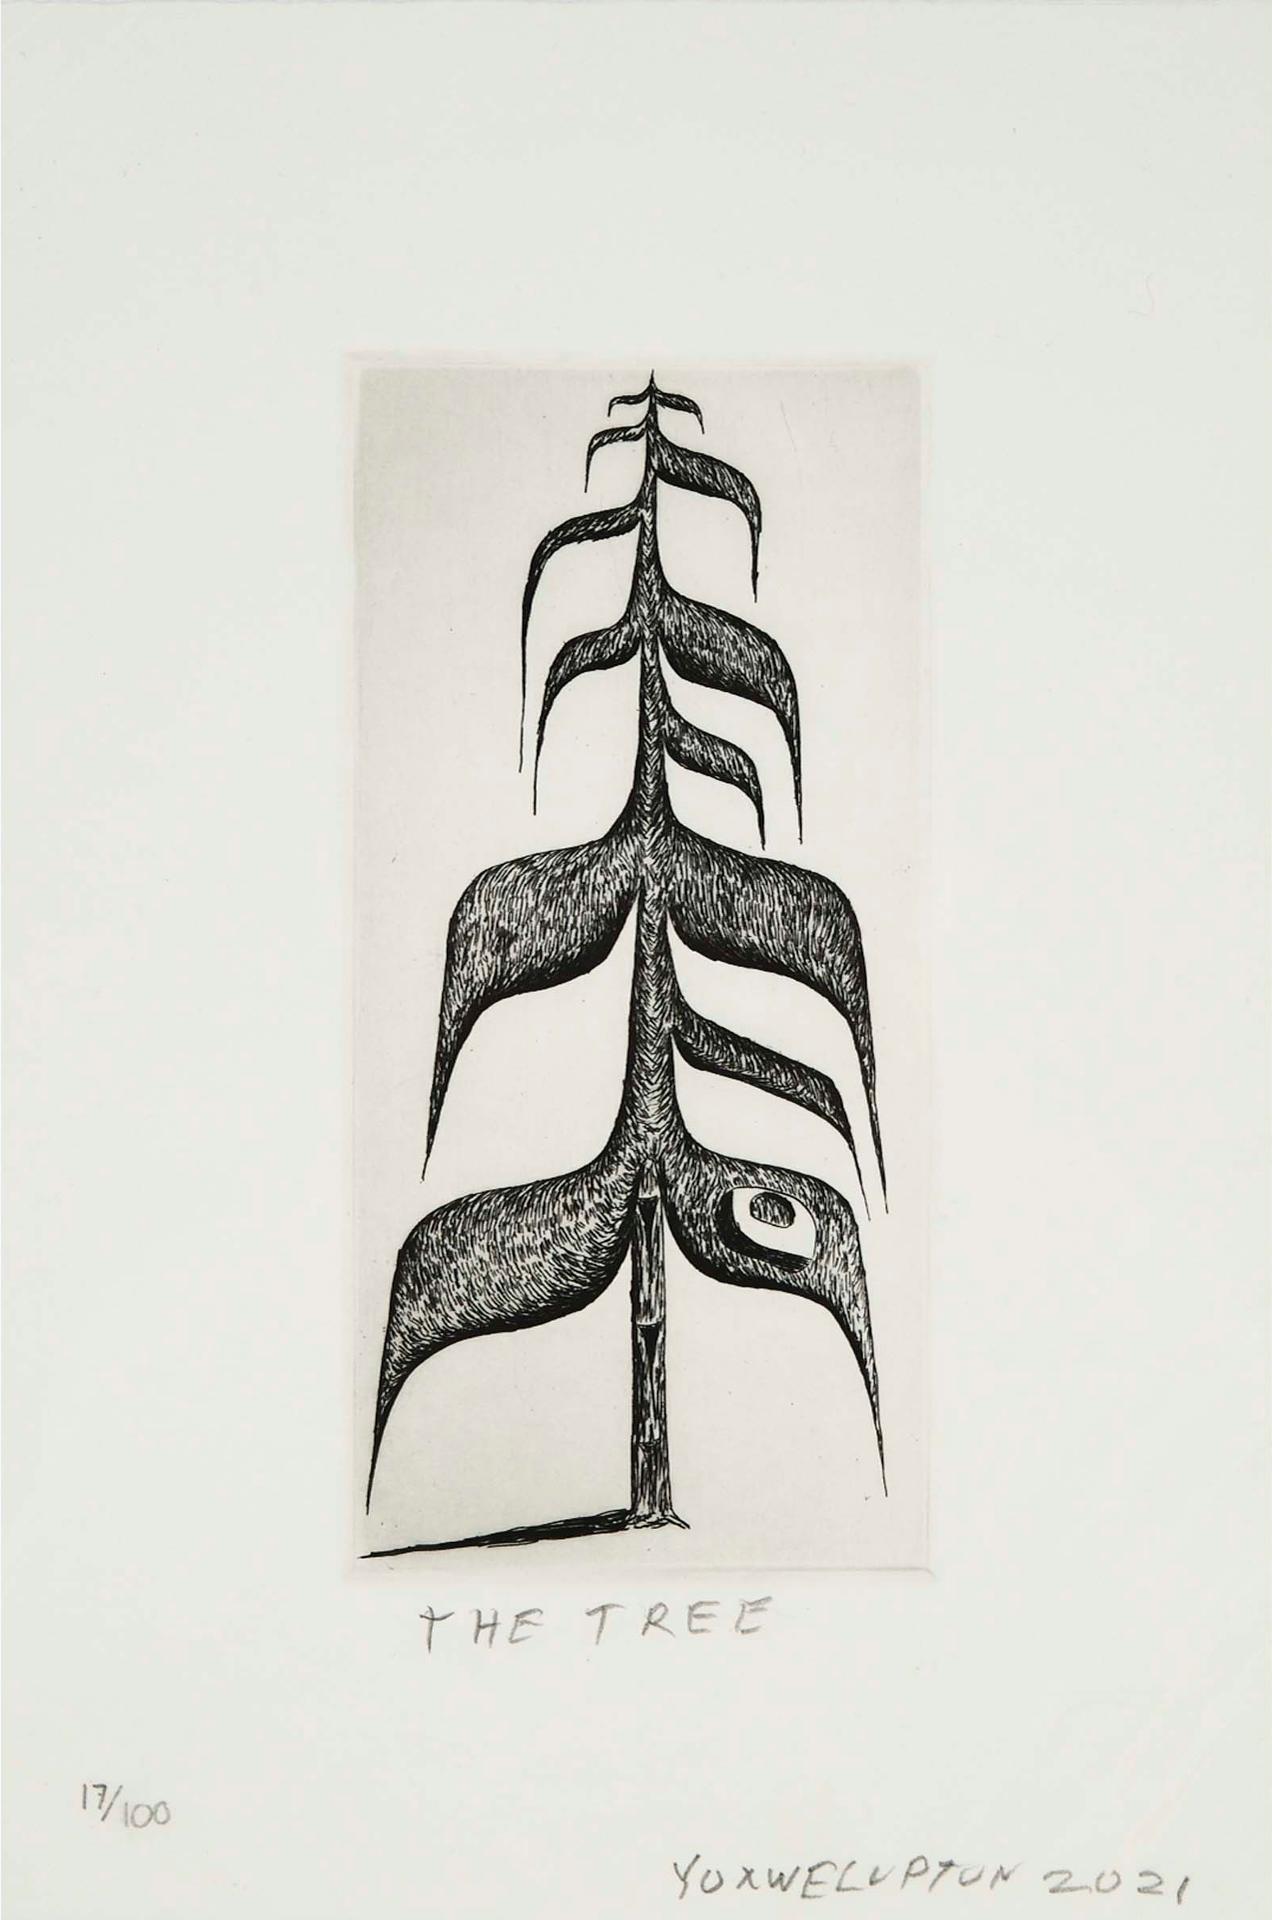 Lawrence Paul Yuxweluptun (1957) - THE TREE, 2021